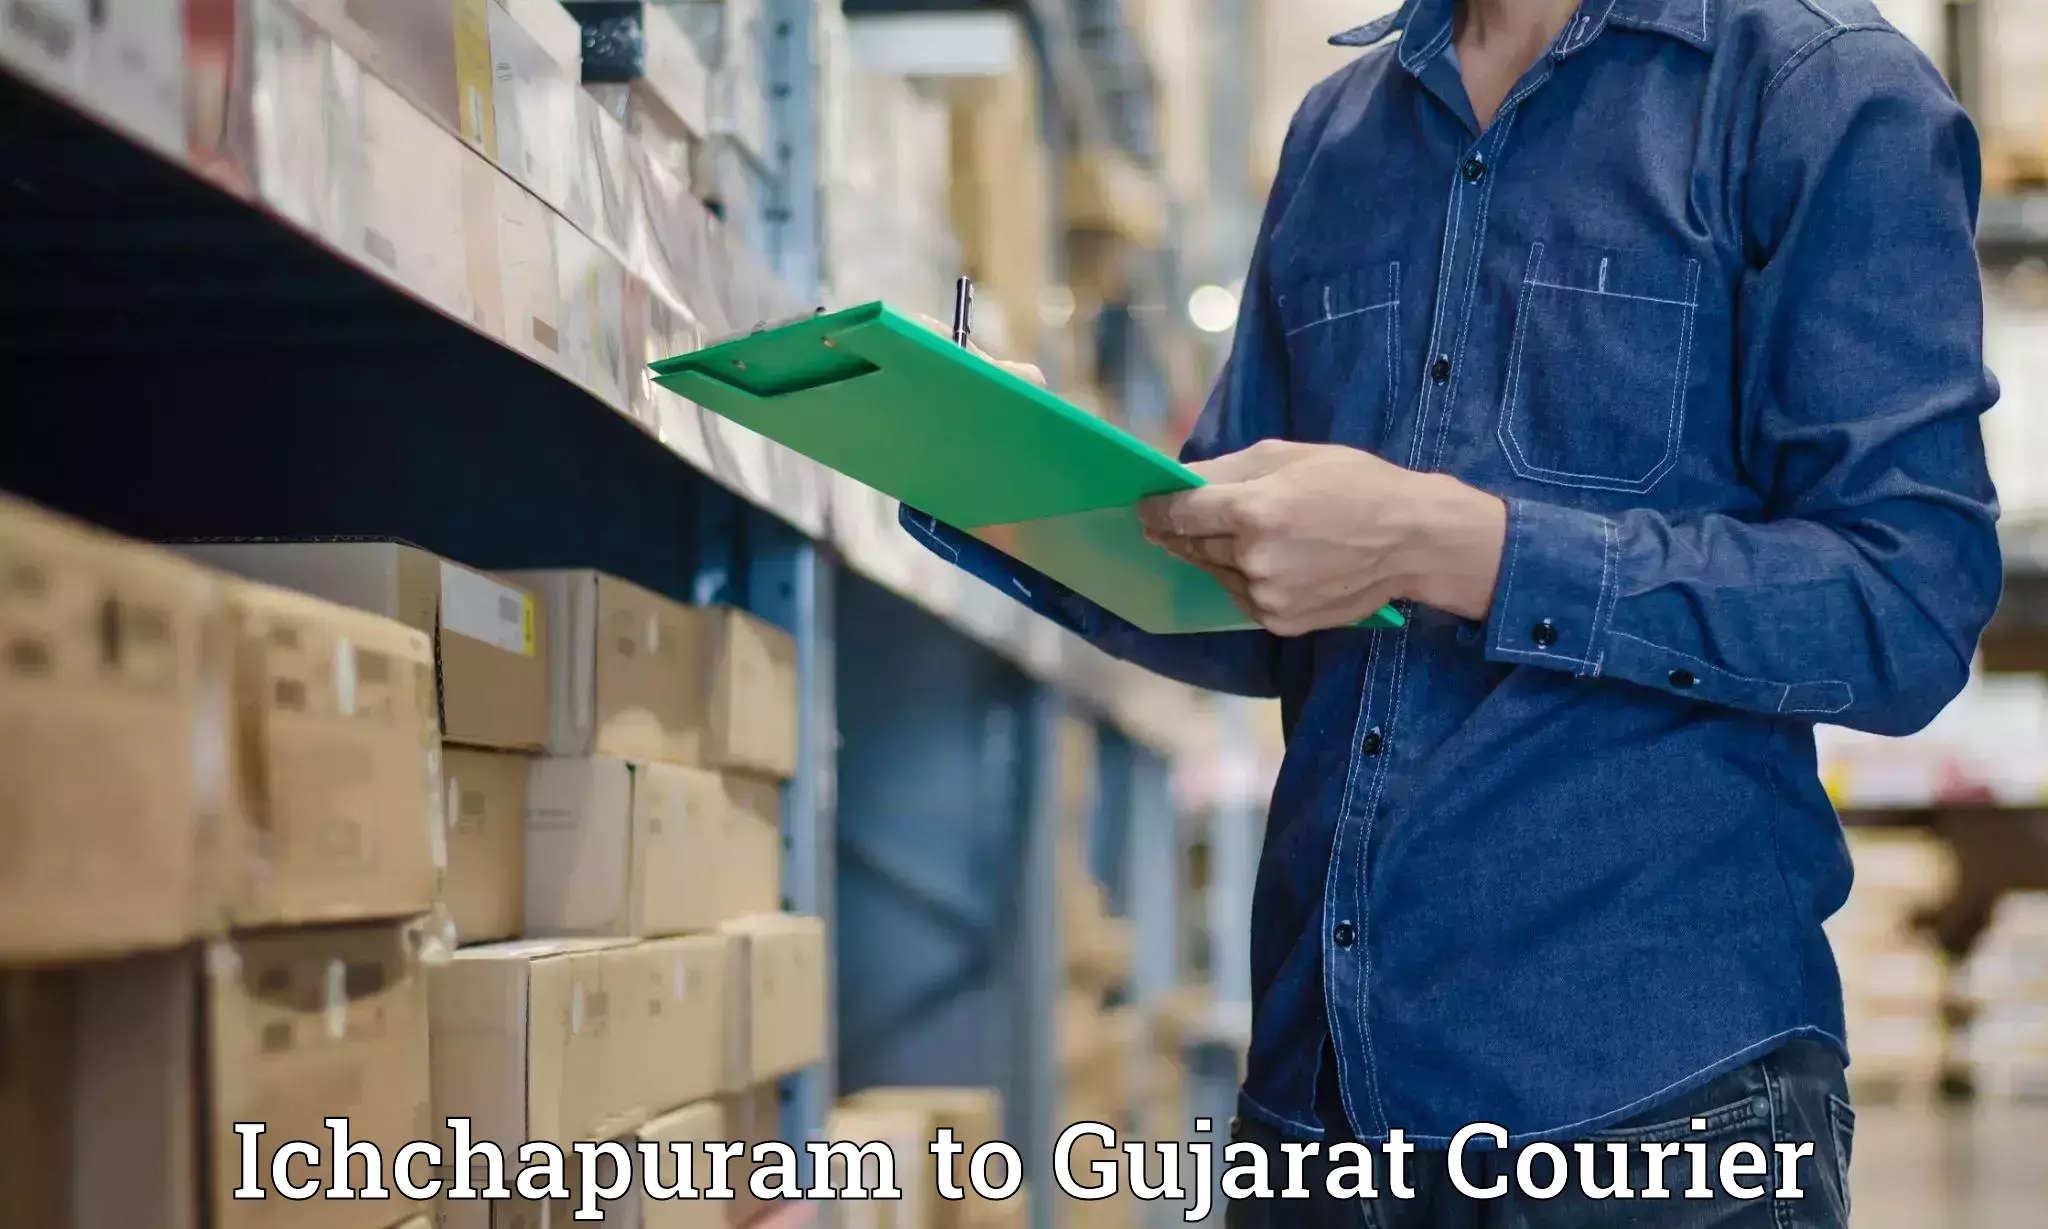 Personal courier services Ichchapuram to Gujarat